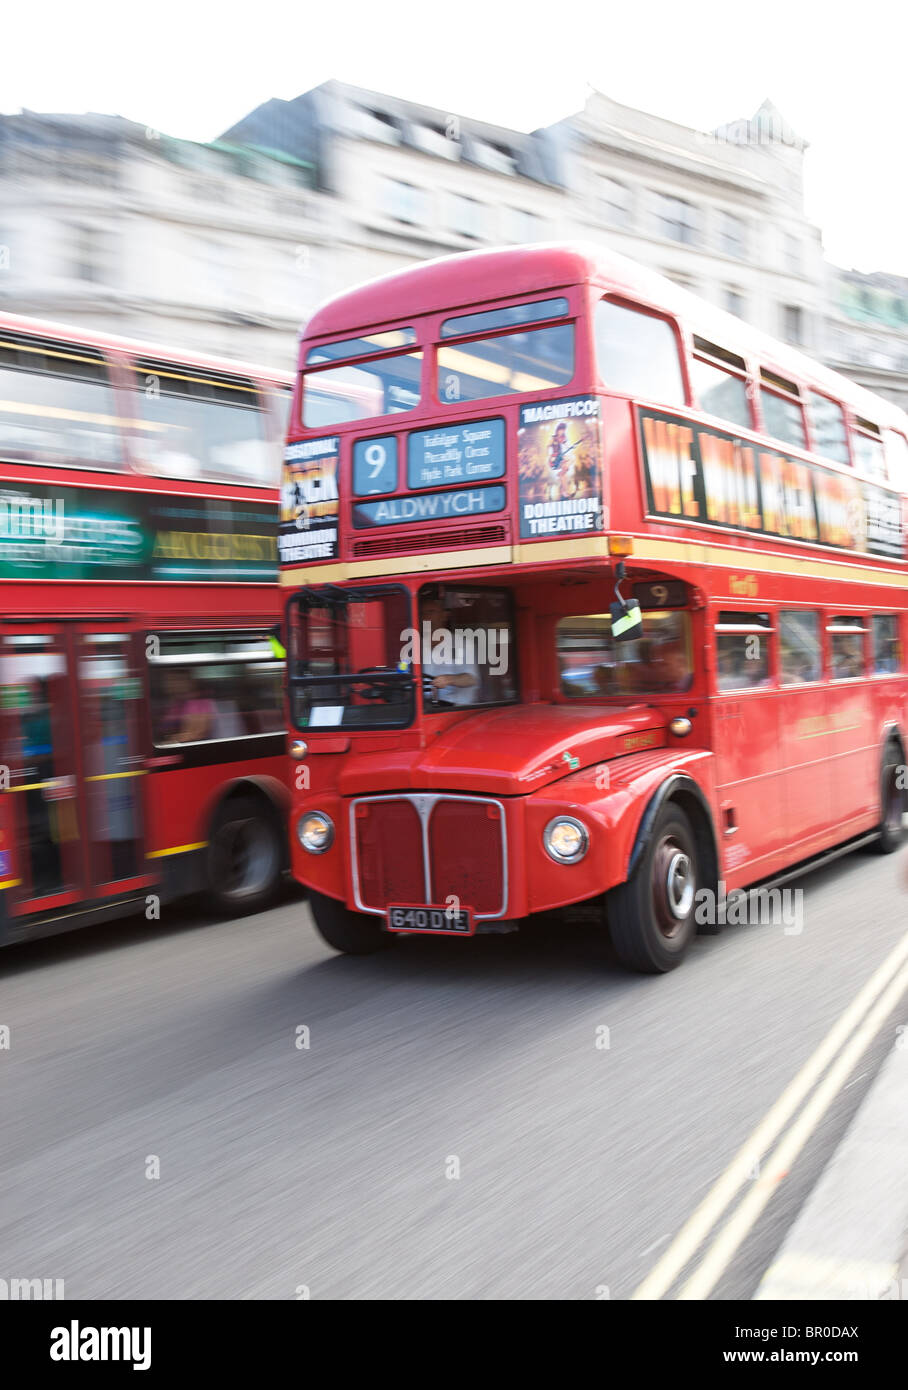 London routemaster bus à débit à Trafalgar Square Banque D'Images